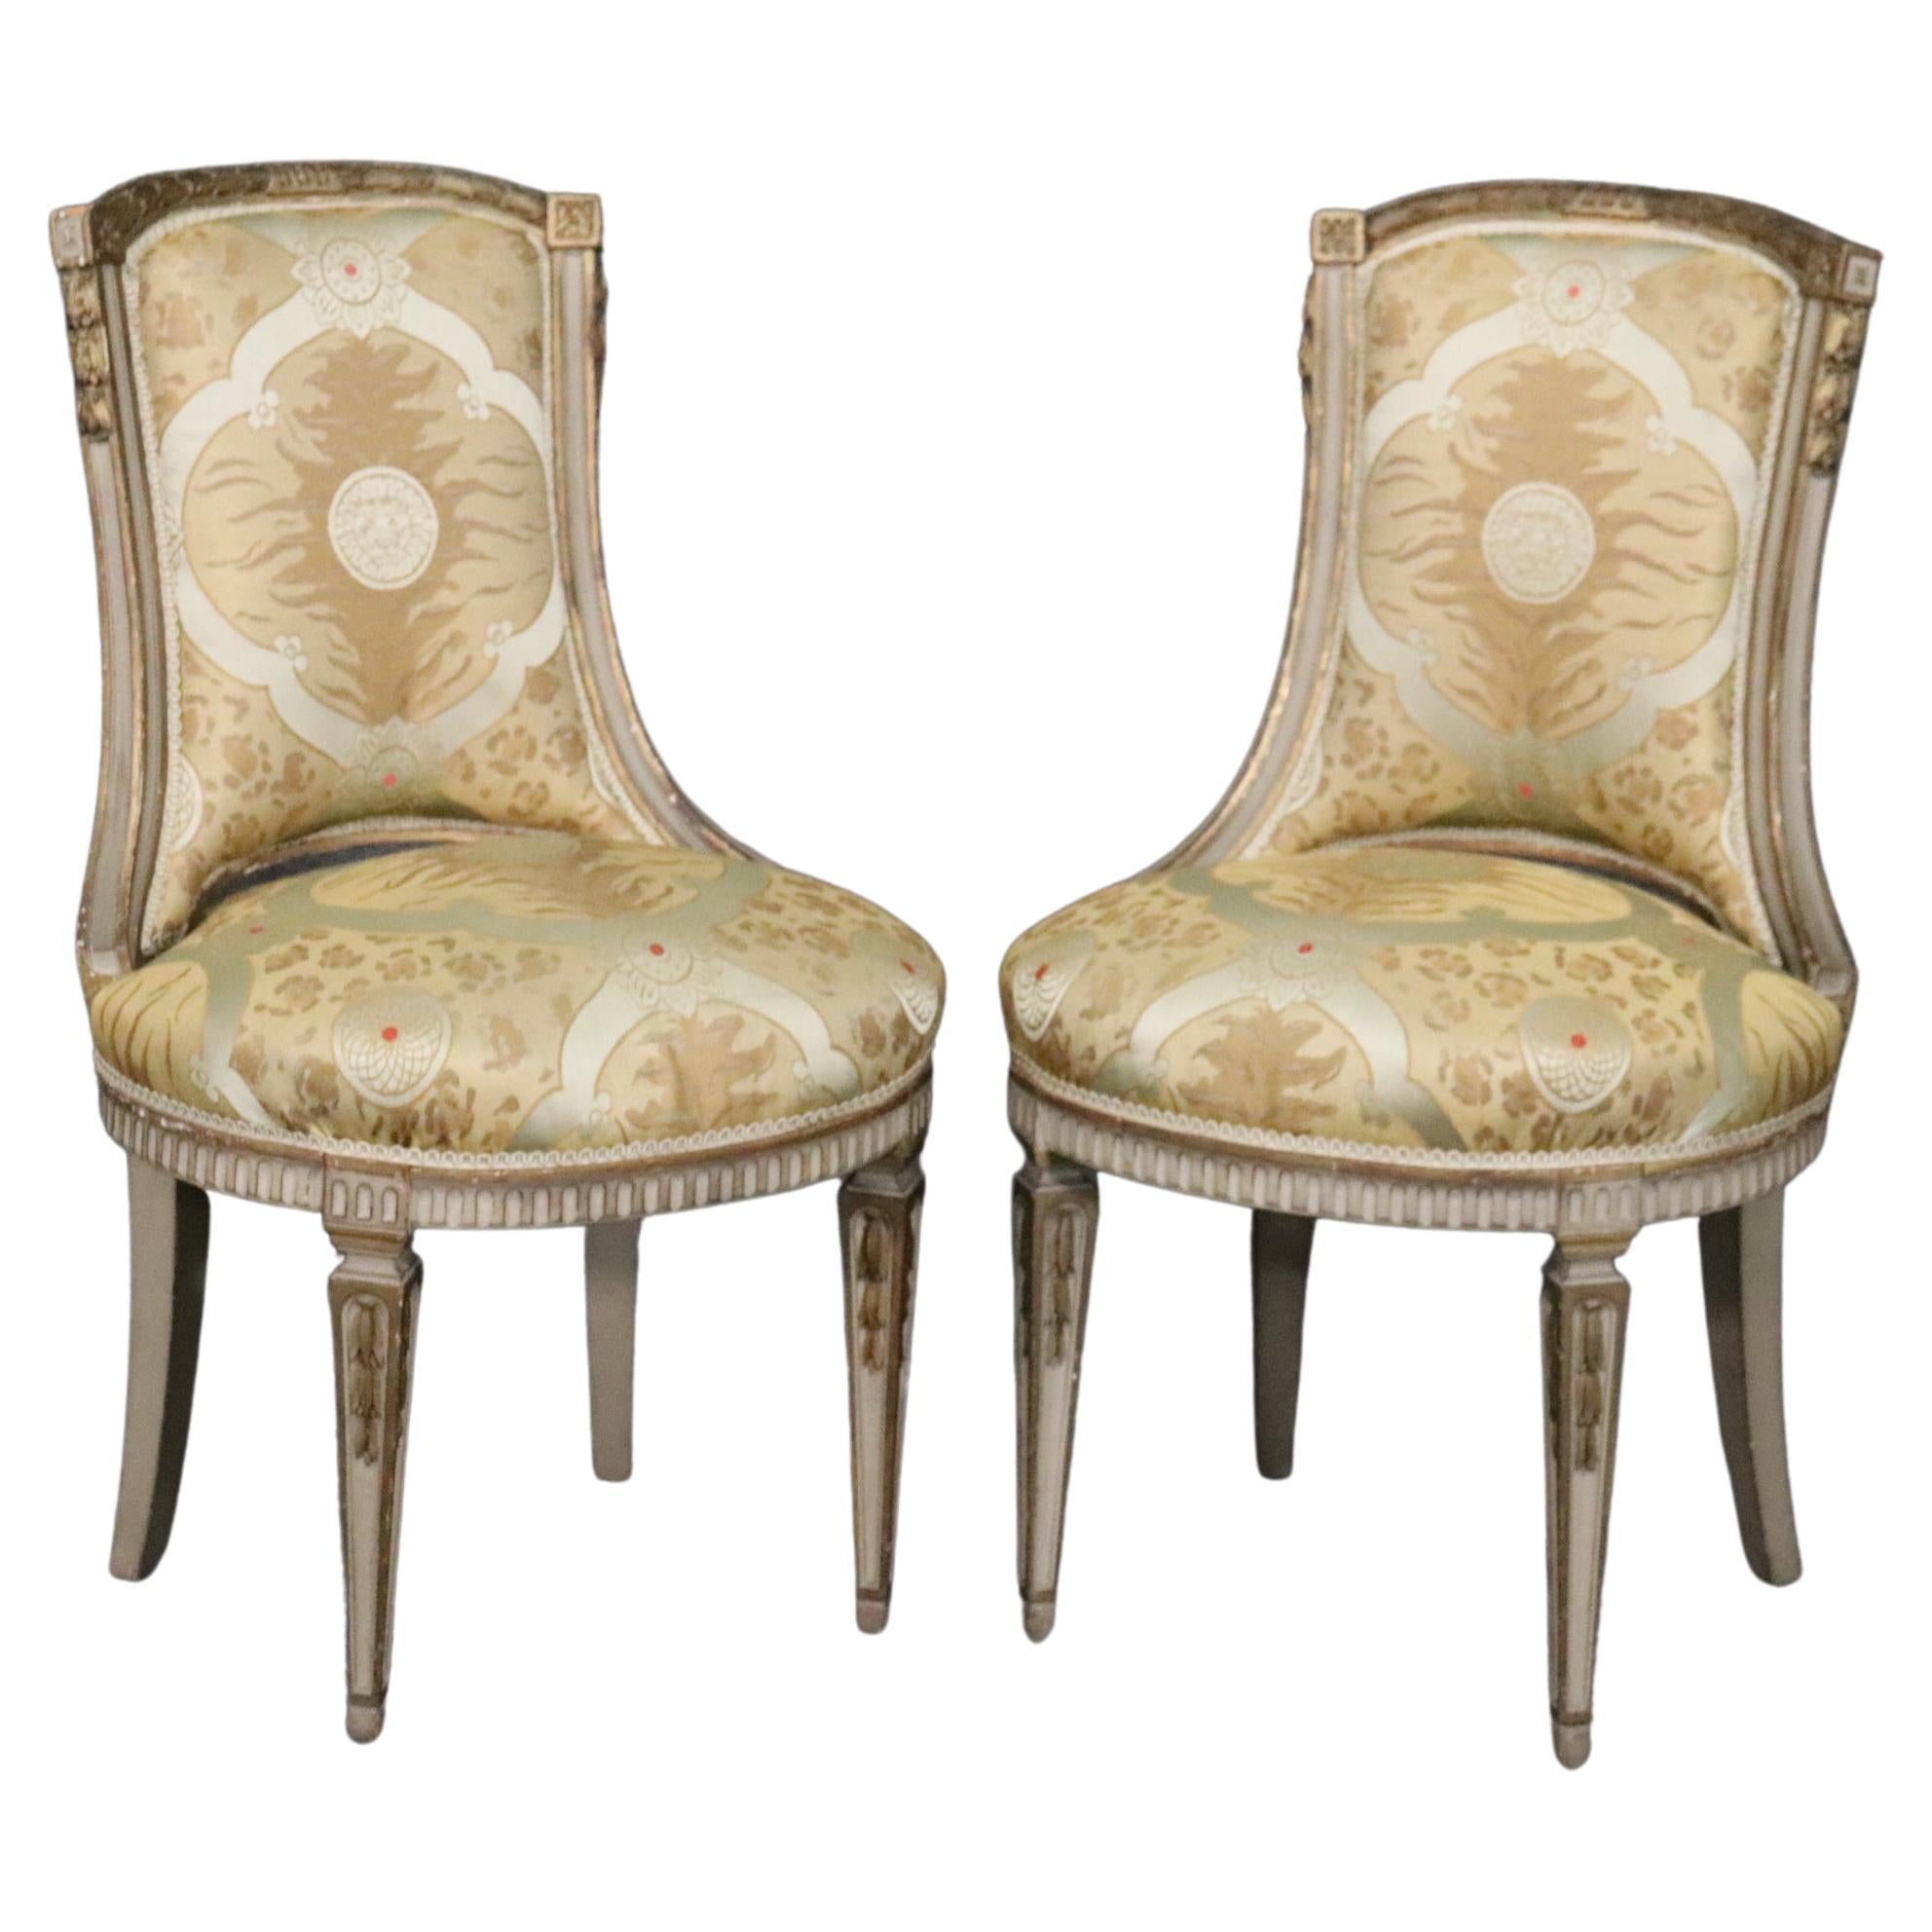 Belle paire de chaises d'appoint françaises Louis XVI peintes et décorées, vers 1920